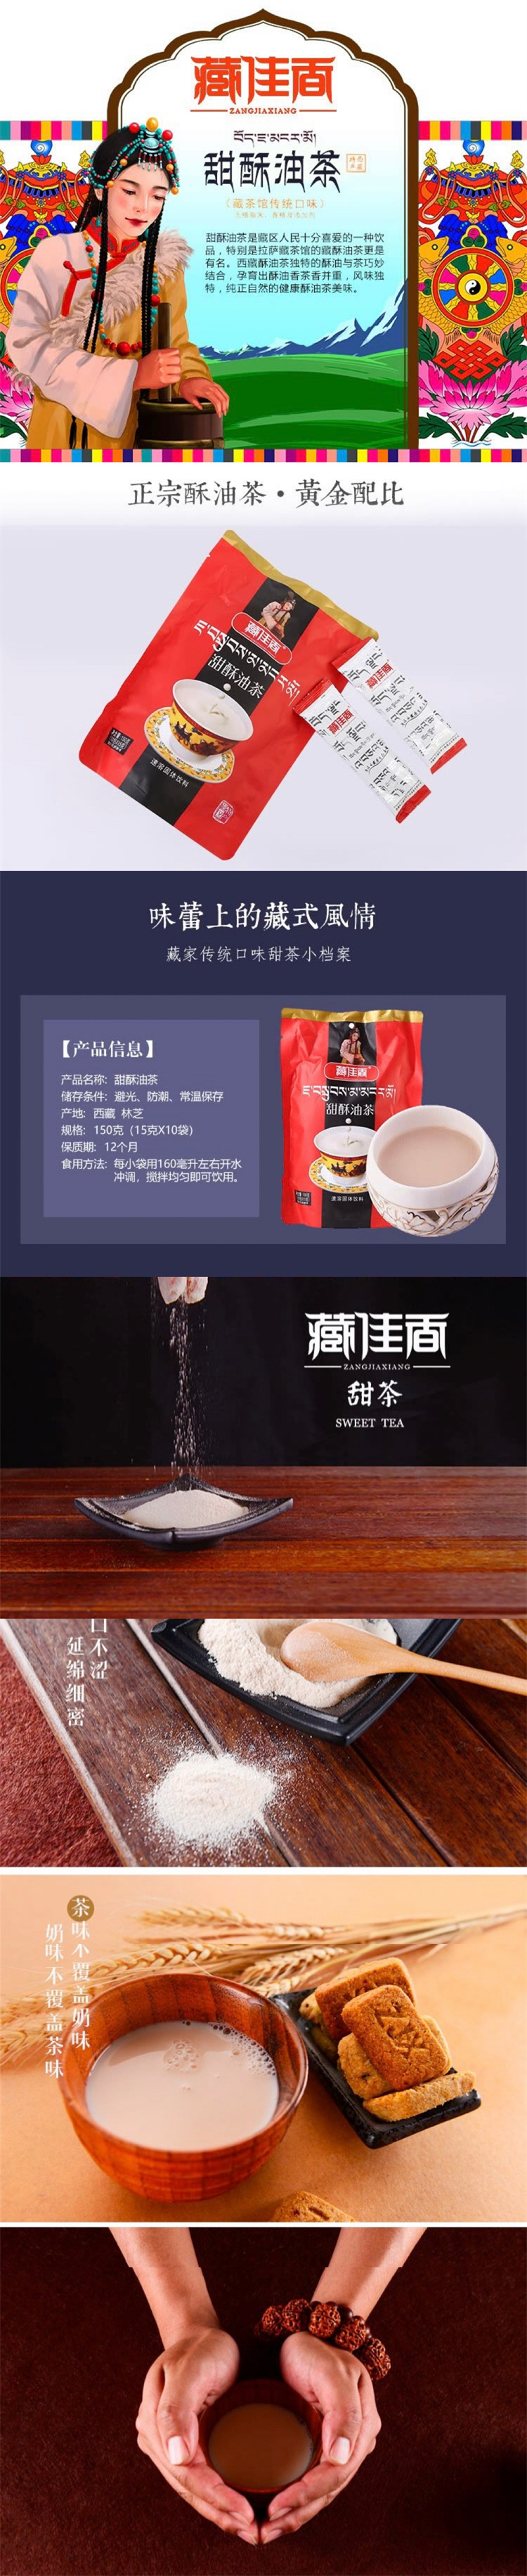 150g甜酥油茶.jpg